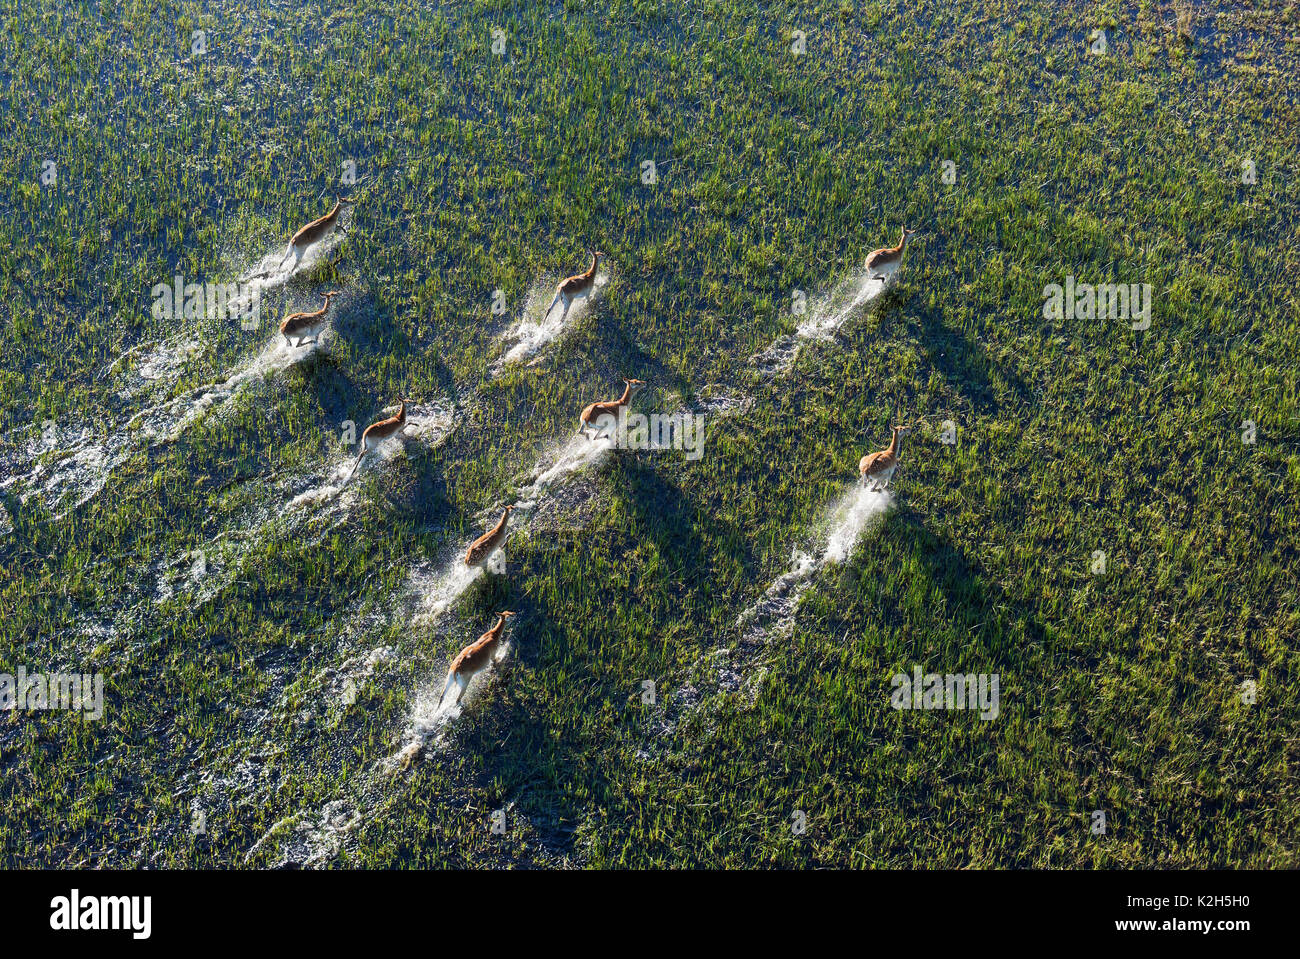 Cobes Lechwes rouges (Kobus leche leche), exécuté dans un marais d'eau douce, vue aérienne, Delta de l'Okavango, Moremi, Botswana Banque D'Images